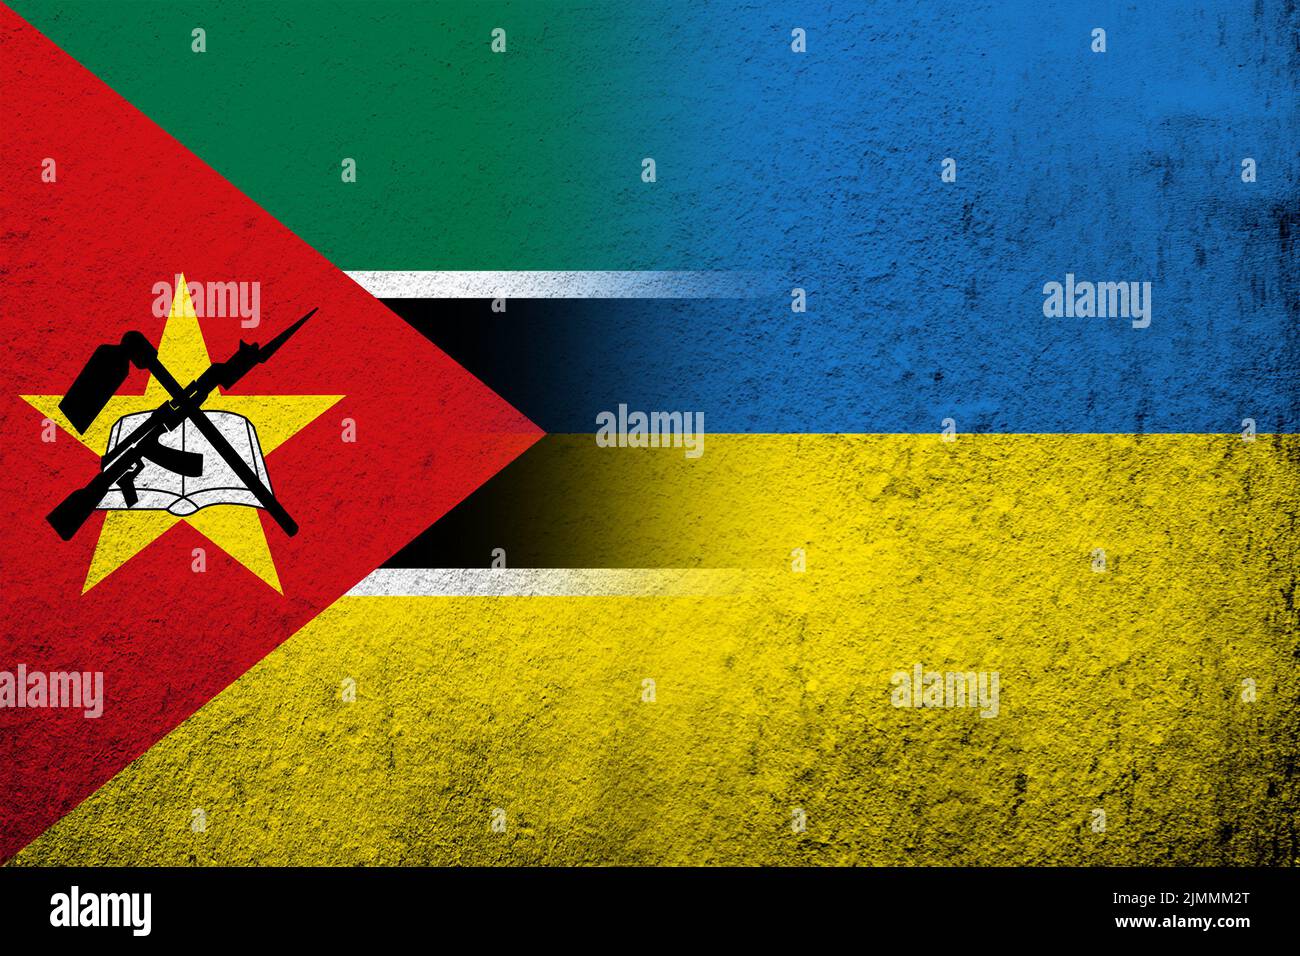 La République du Mozambique drapeau national avec drapeau national de l'Ukraine. Grunge l'arrière-plan Banque D'Images